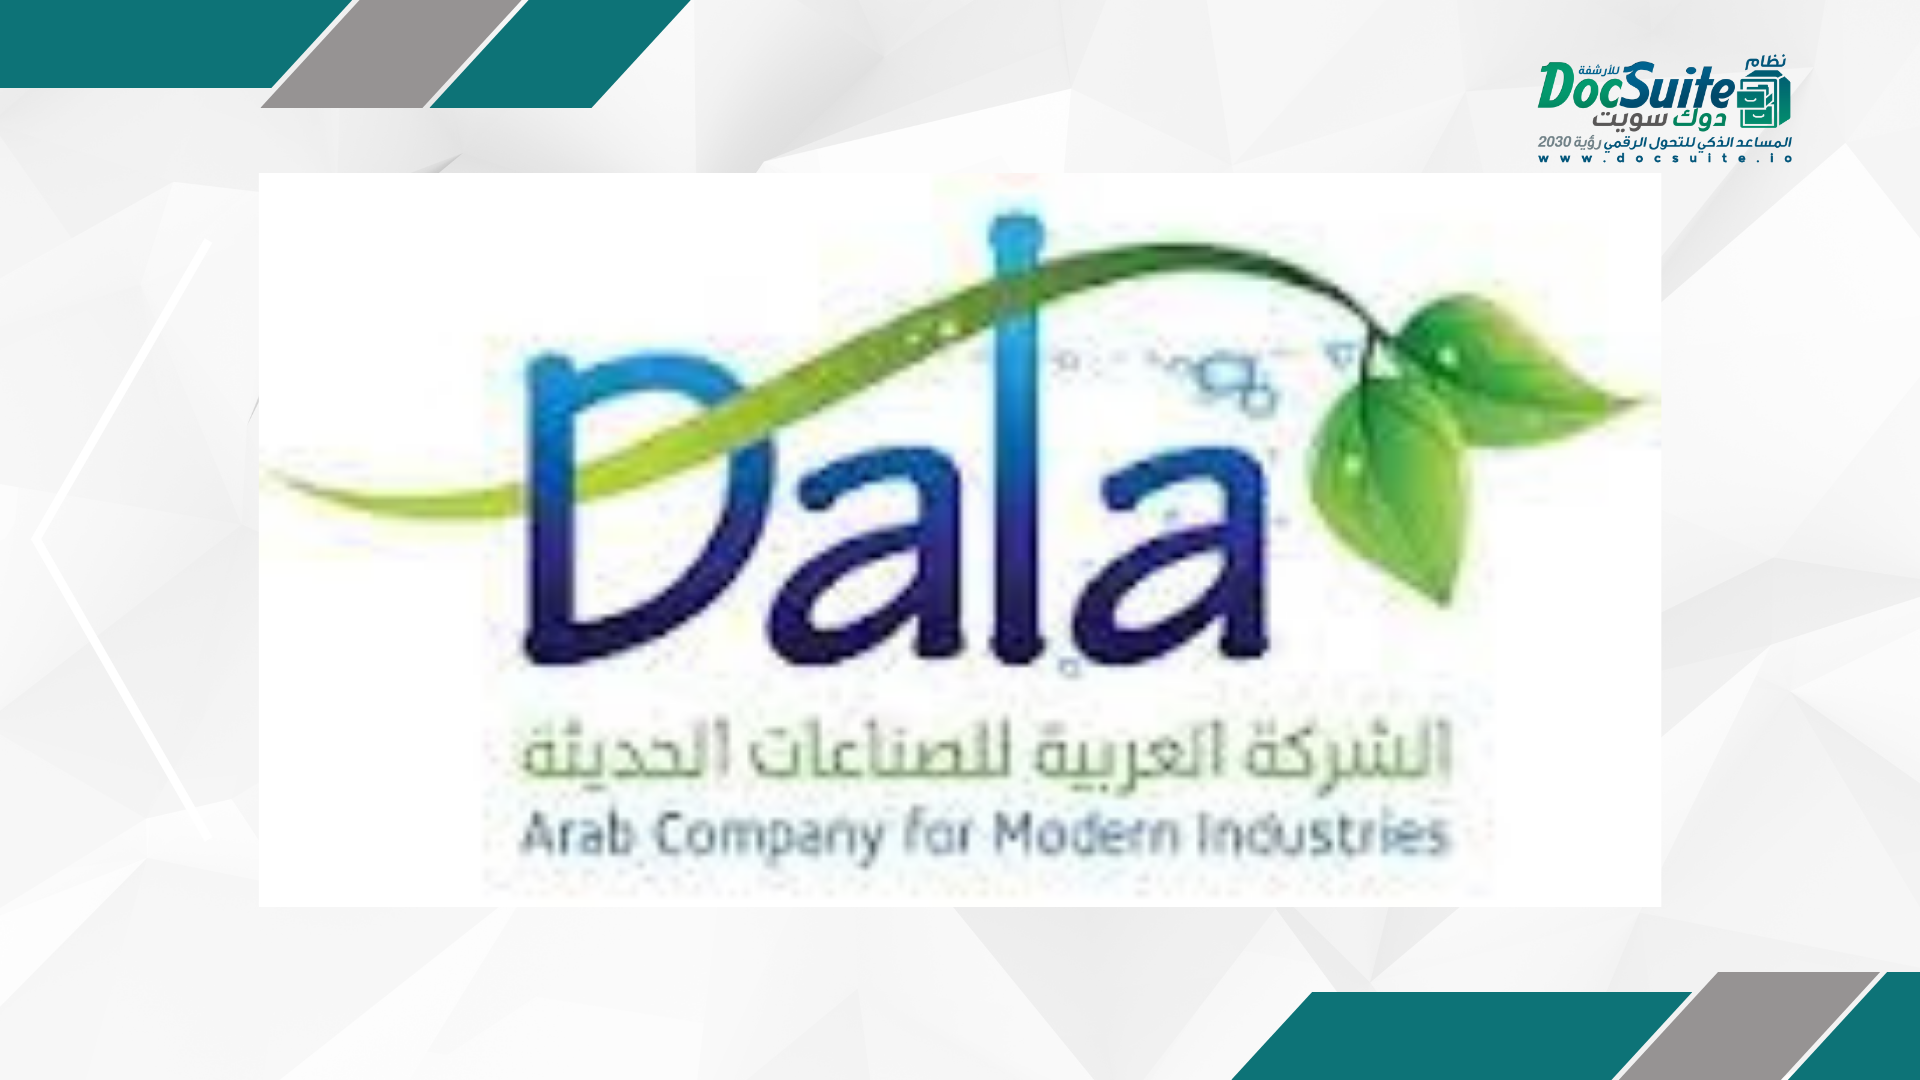 نظام أرشفة إلكتروني يحدث تغييرًا إيجابيًا في شركة دالا